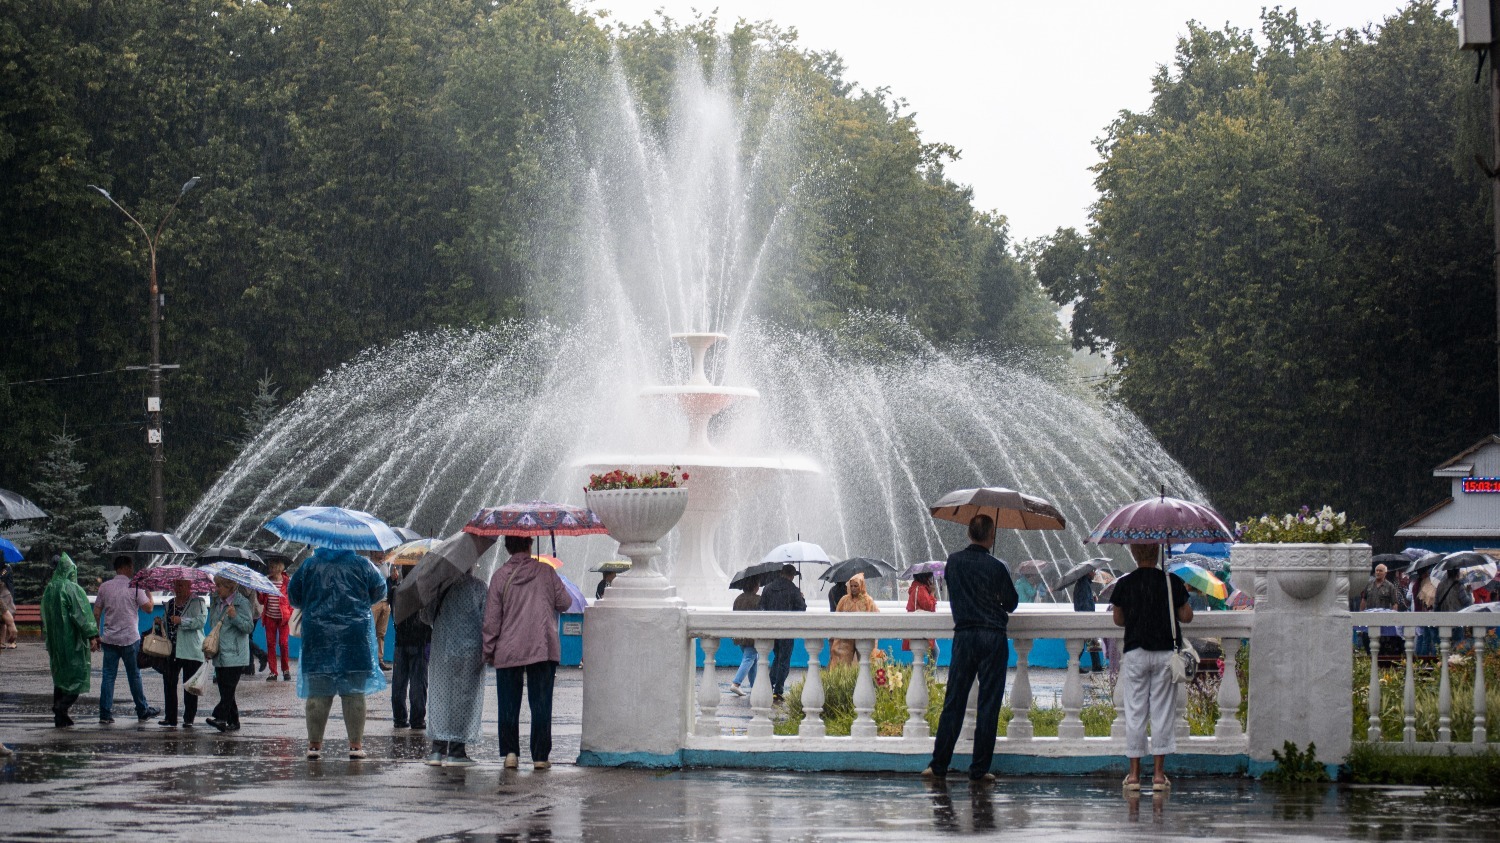 При поездке в Нижний Новгород стоит прихватить с собой дождевик, зонт и теплую одежду